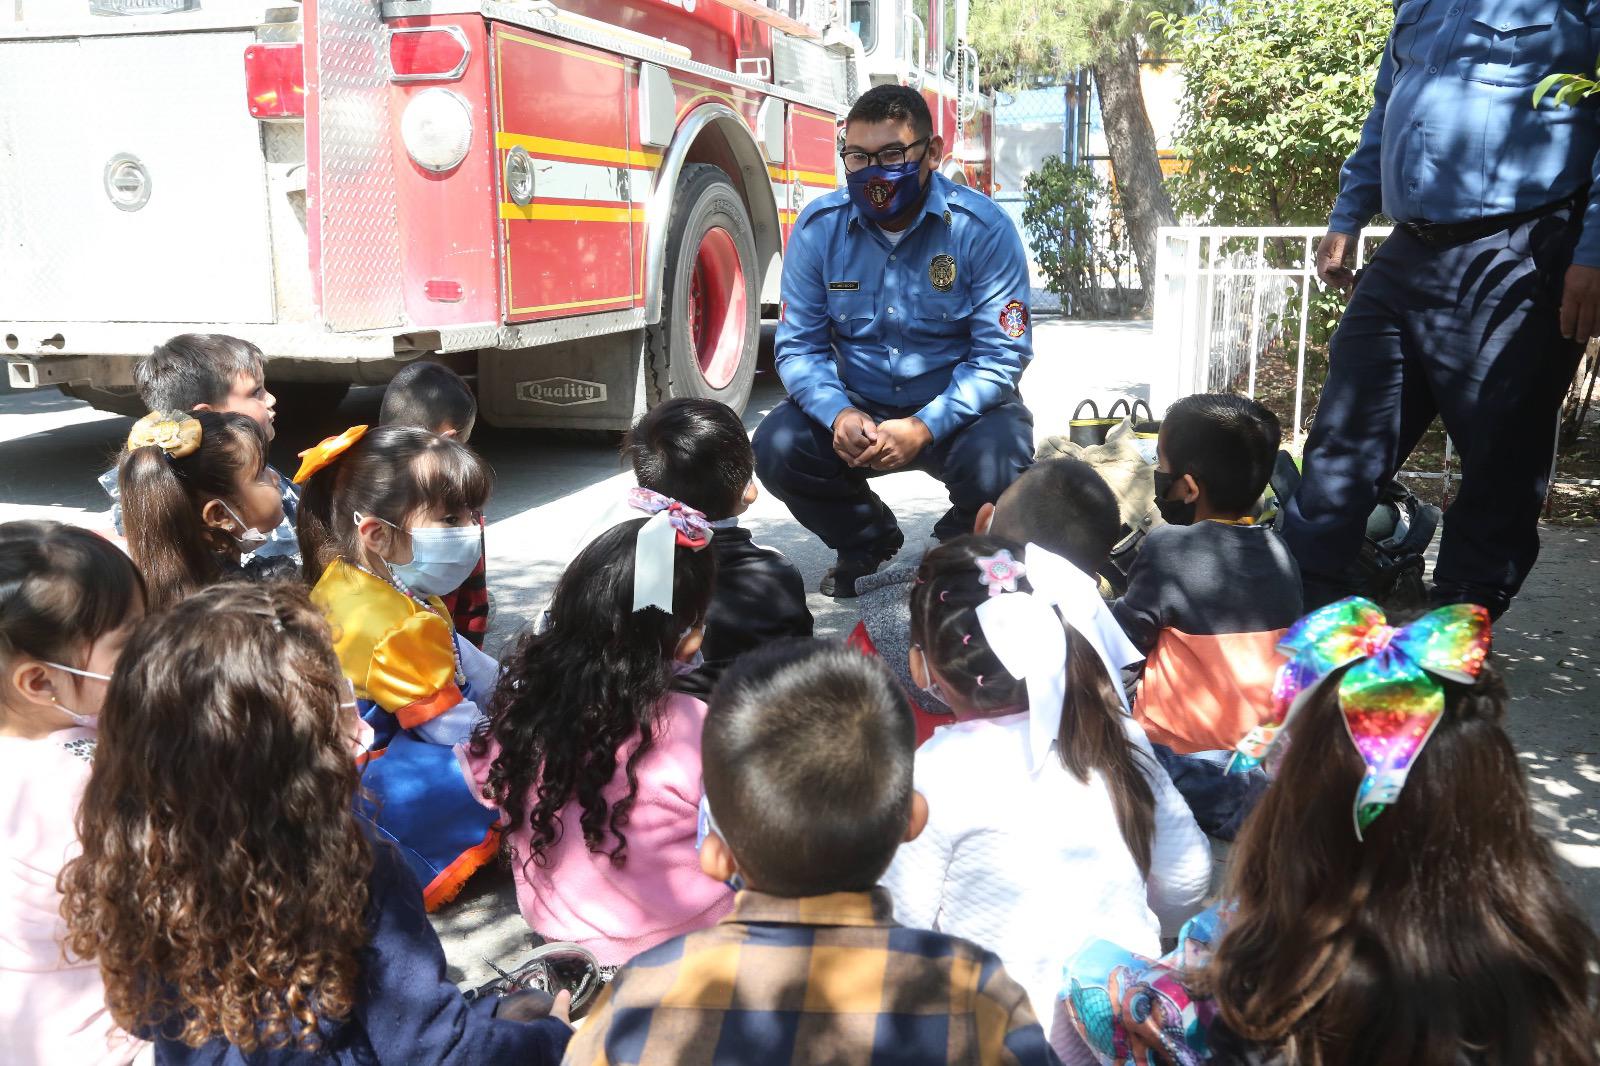 ¡Cuide a sus hijos! evite accidentes que provocan quemaduras, dice el DIF Coahuila. Noticias en tiempo real